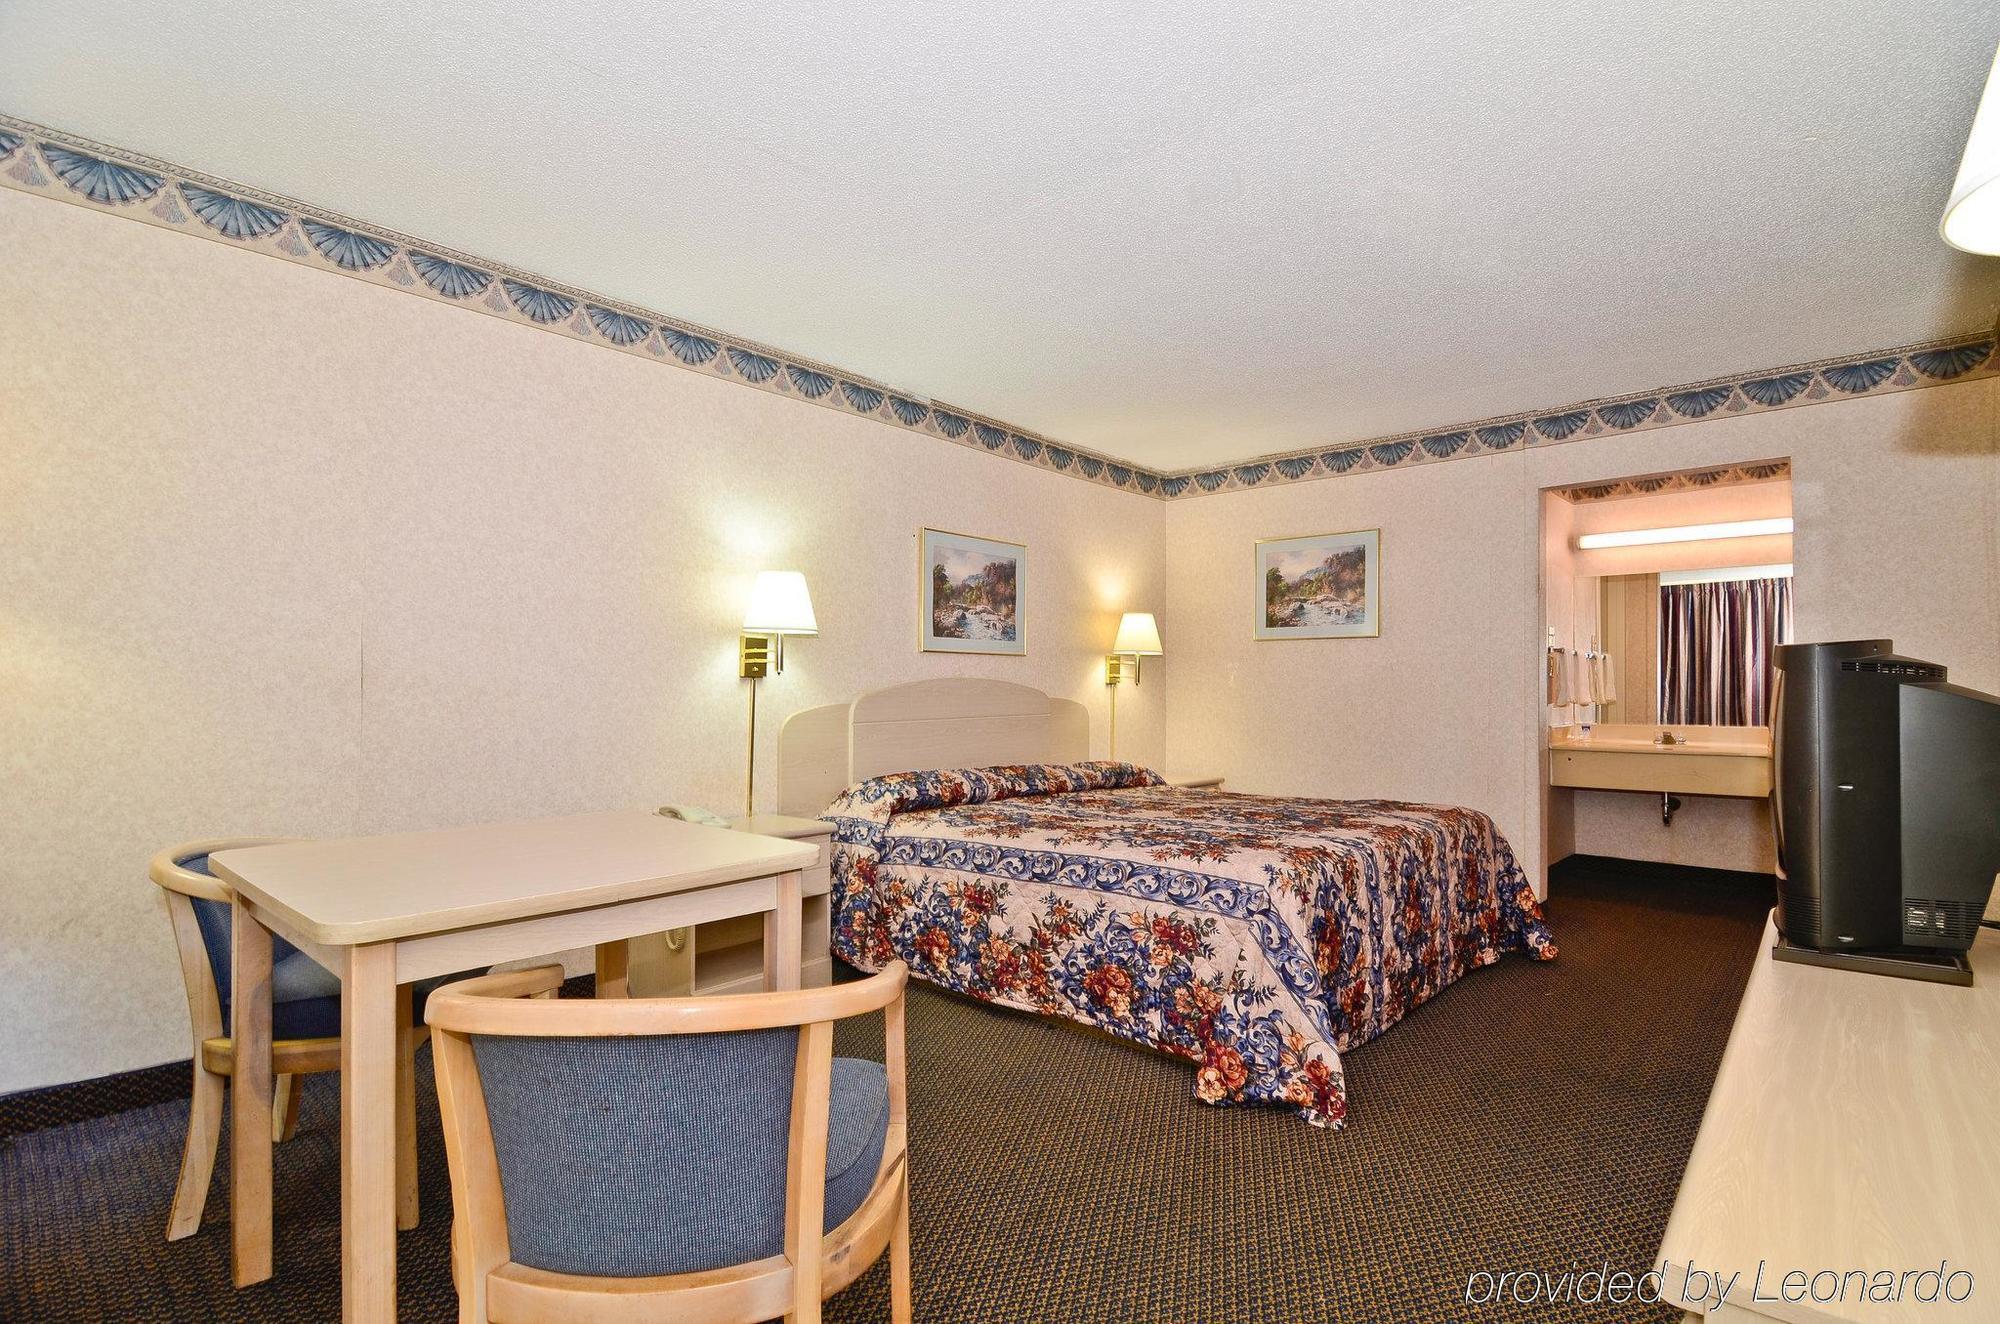 The Sanford Inn Room photo